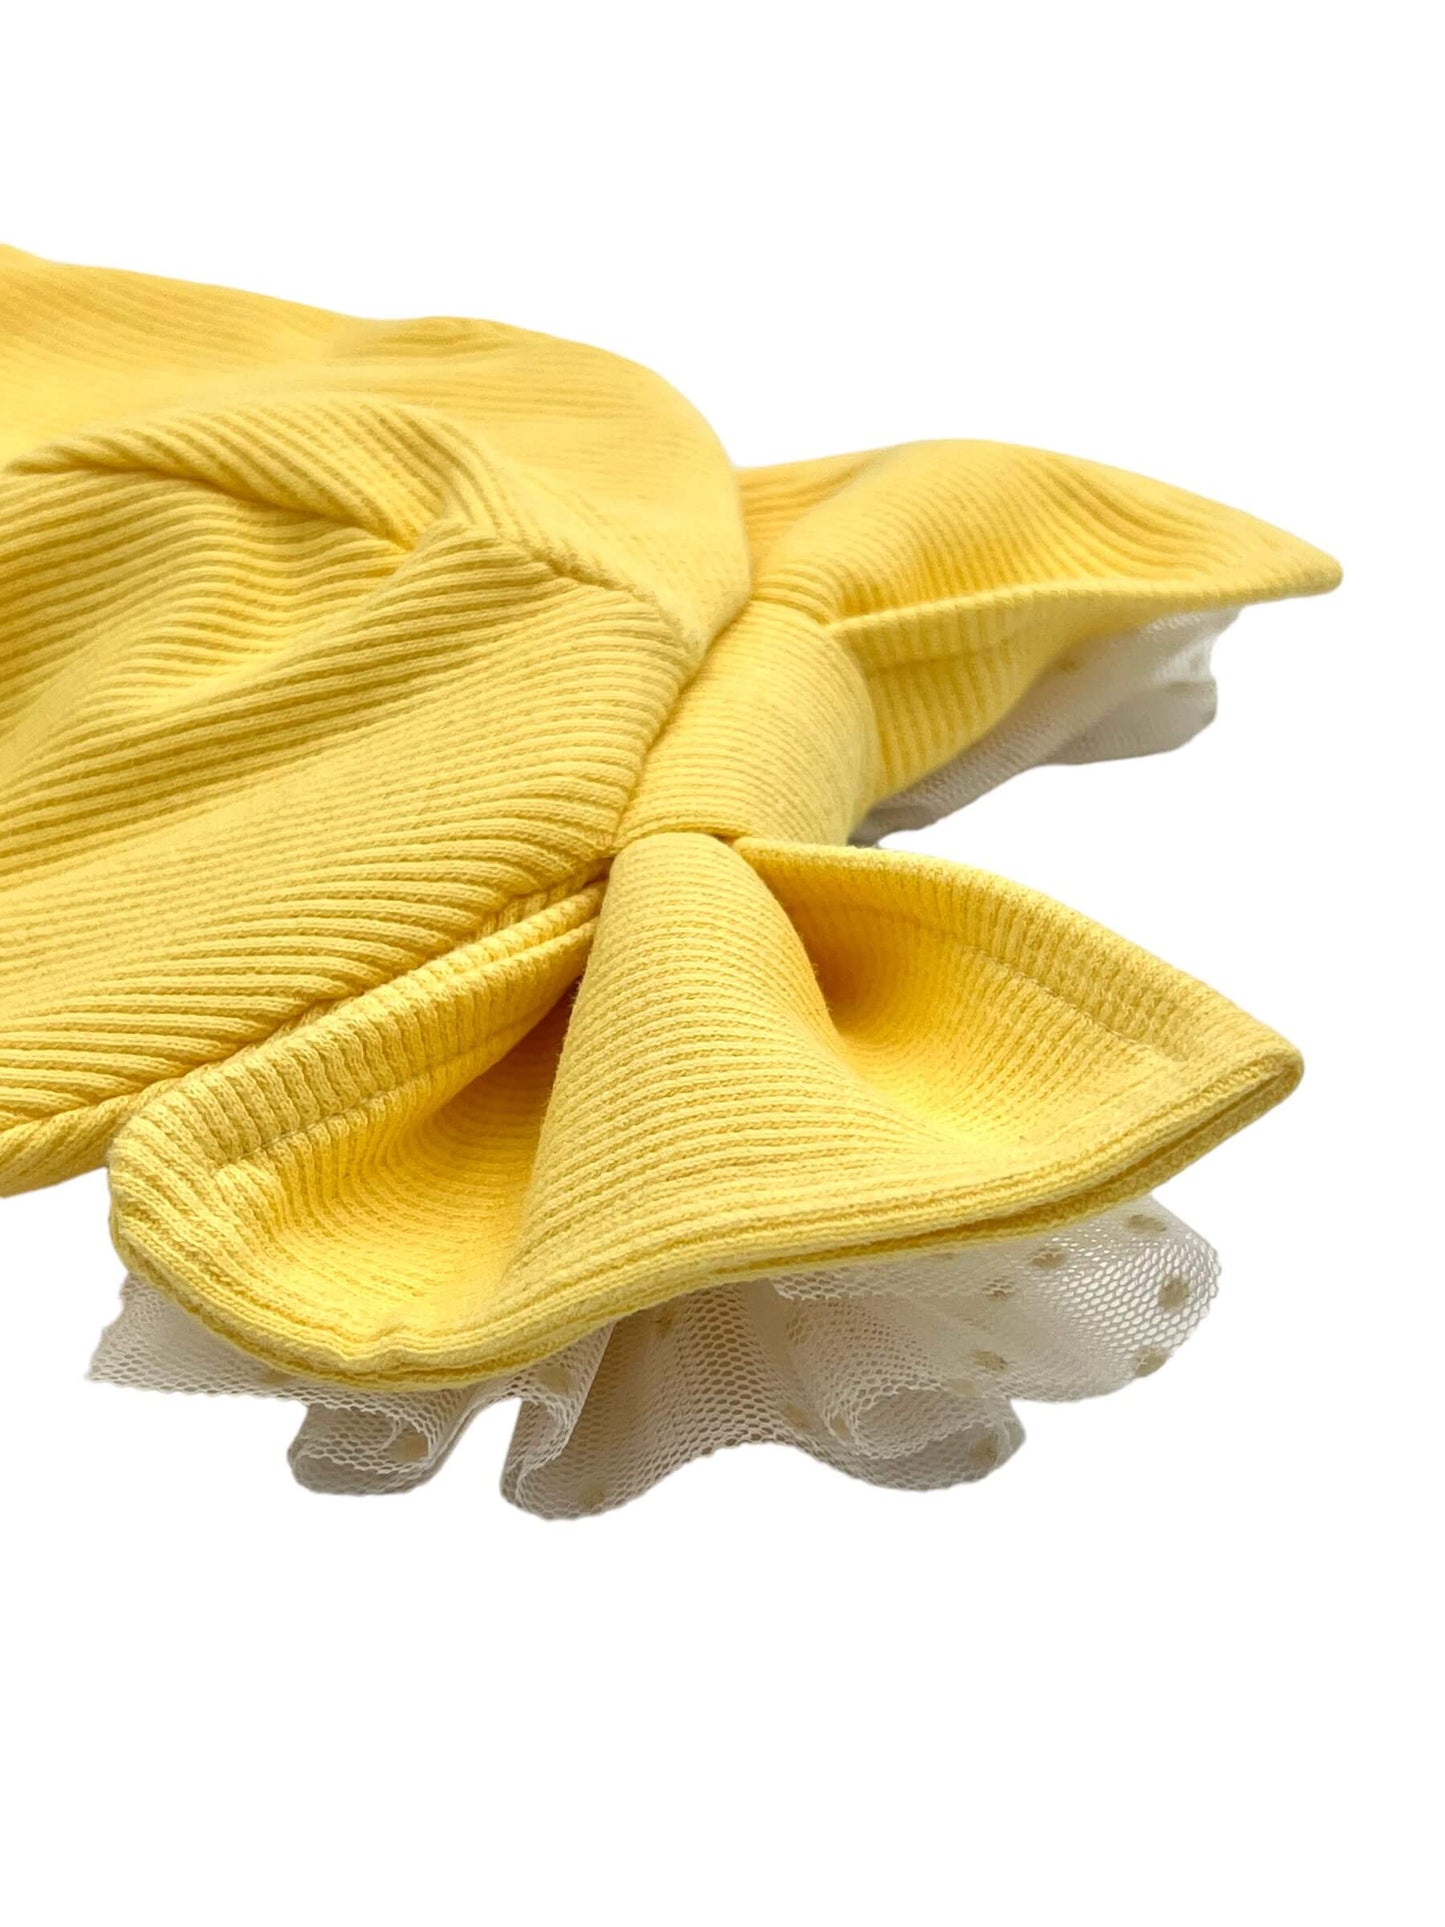 Švelniai geltonos spalvos RIB trikotažo kepurės ir šaliko/movos komplektai vaikams